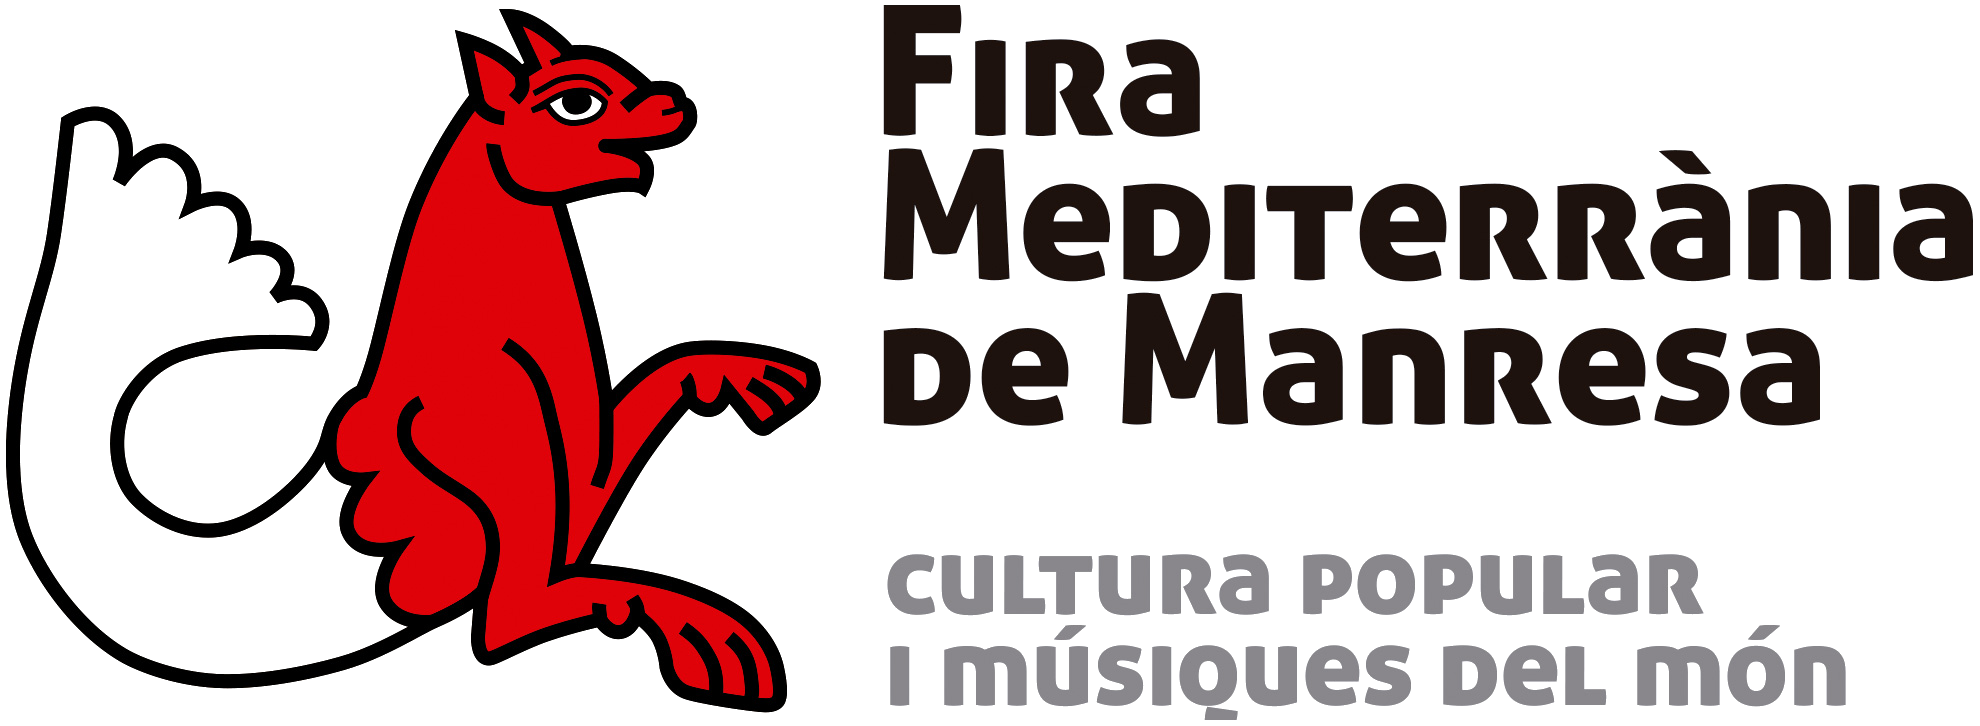 Fira mediterrània de Manresa - Cultura popular i músiques del món